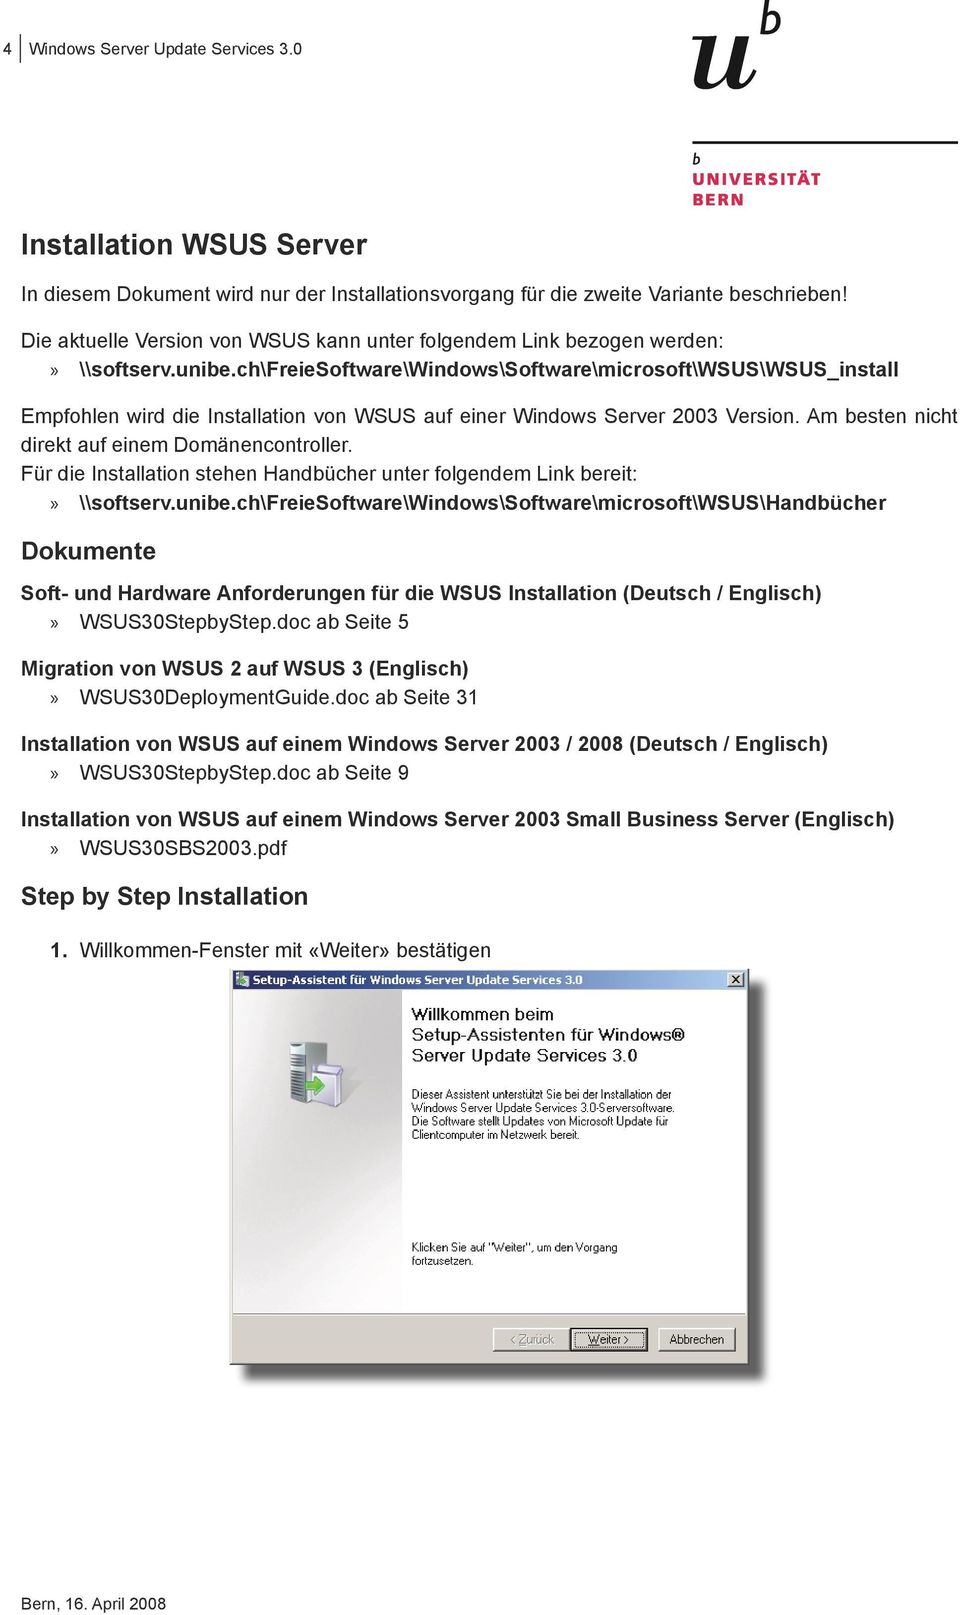 ch\freiesoftware\windows\software\microsoft\wsus\wsus_install Empfohlen wird die Installation von WSUS auf einer Windows Server 2003 Version. Am besten nicht direkt auf einem Domänencontroller.